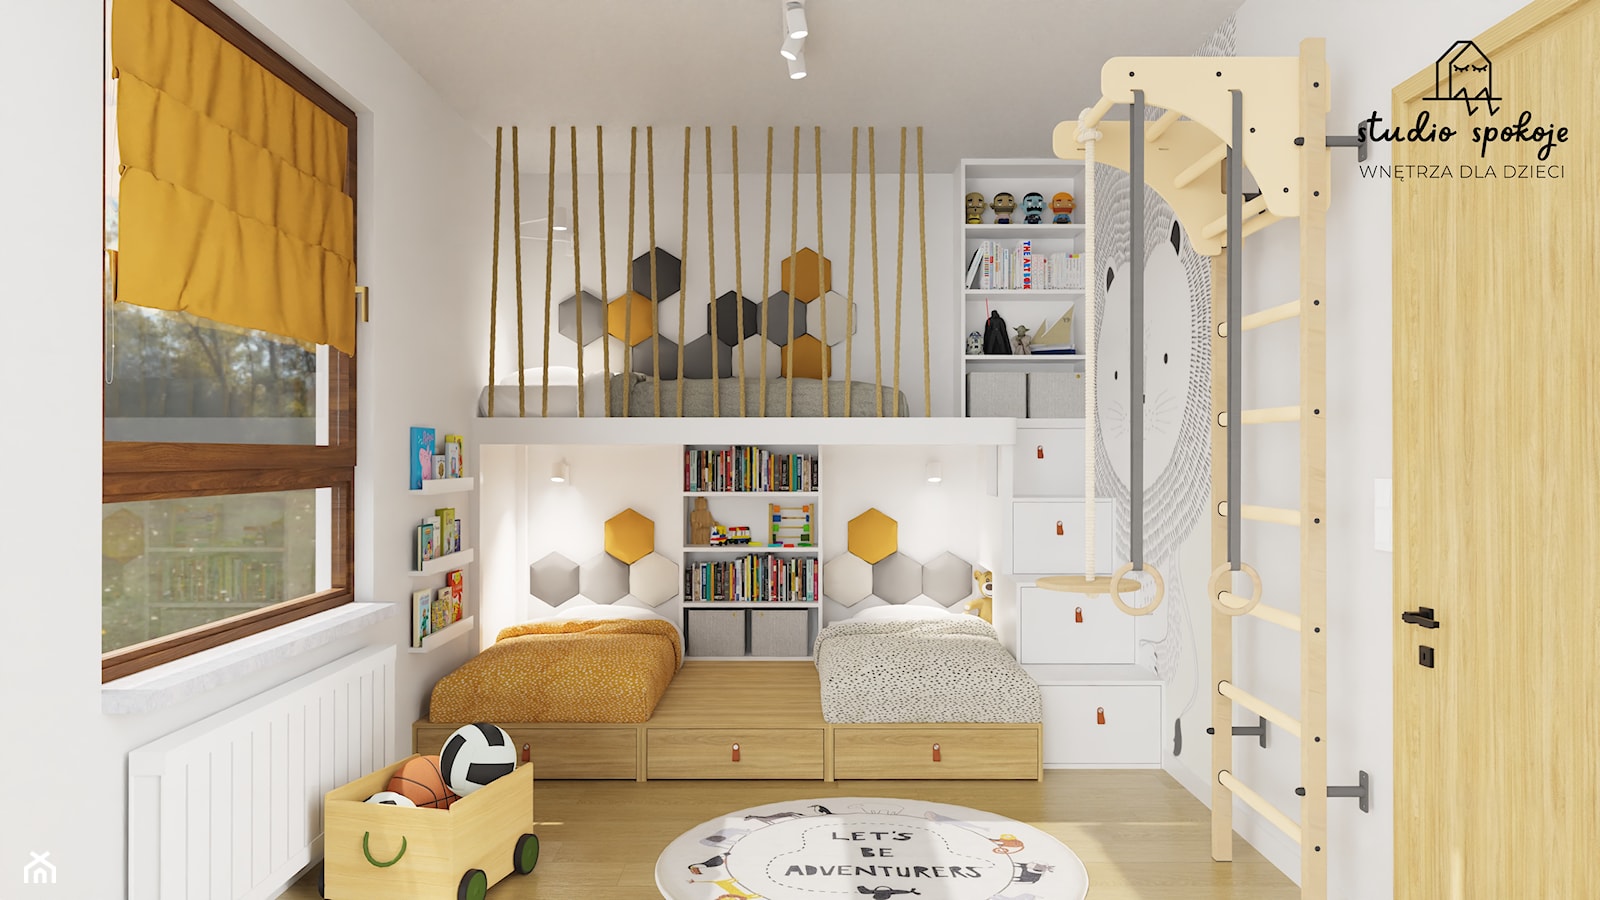 Pokój trzech chłopców - łóżko z antresolą, potrójne łóżko - zdjęcie od Studio Spokoje - wnętrza dla dzieci - Homebook